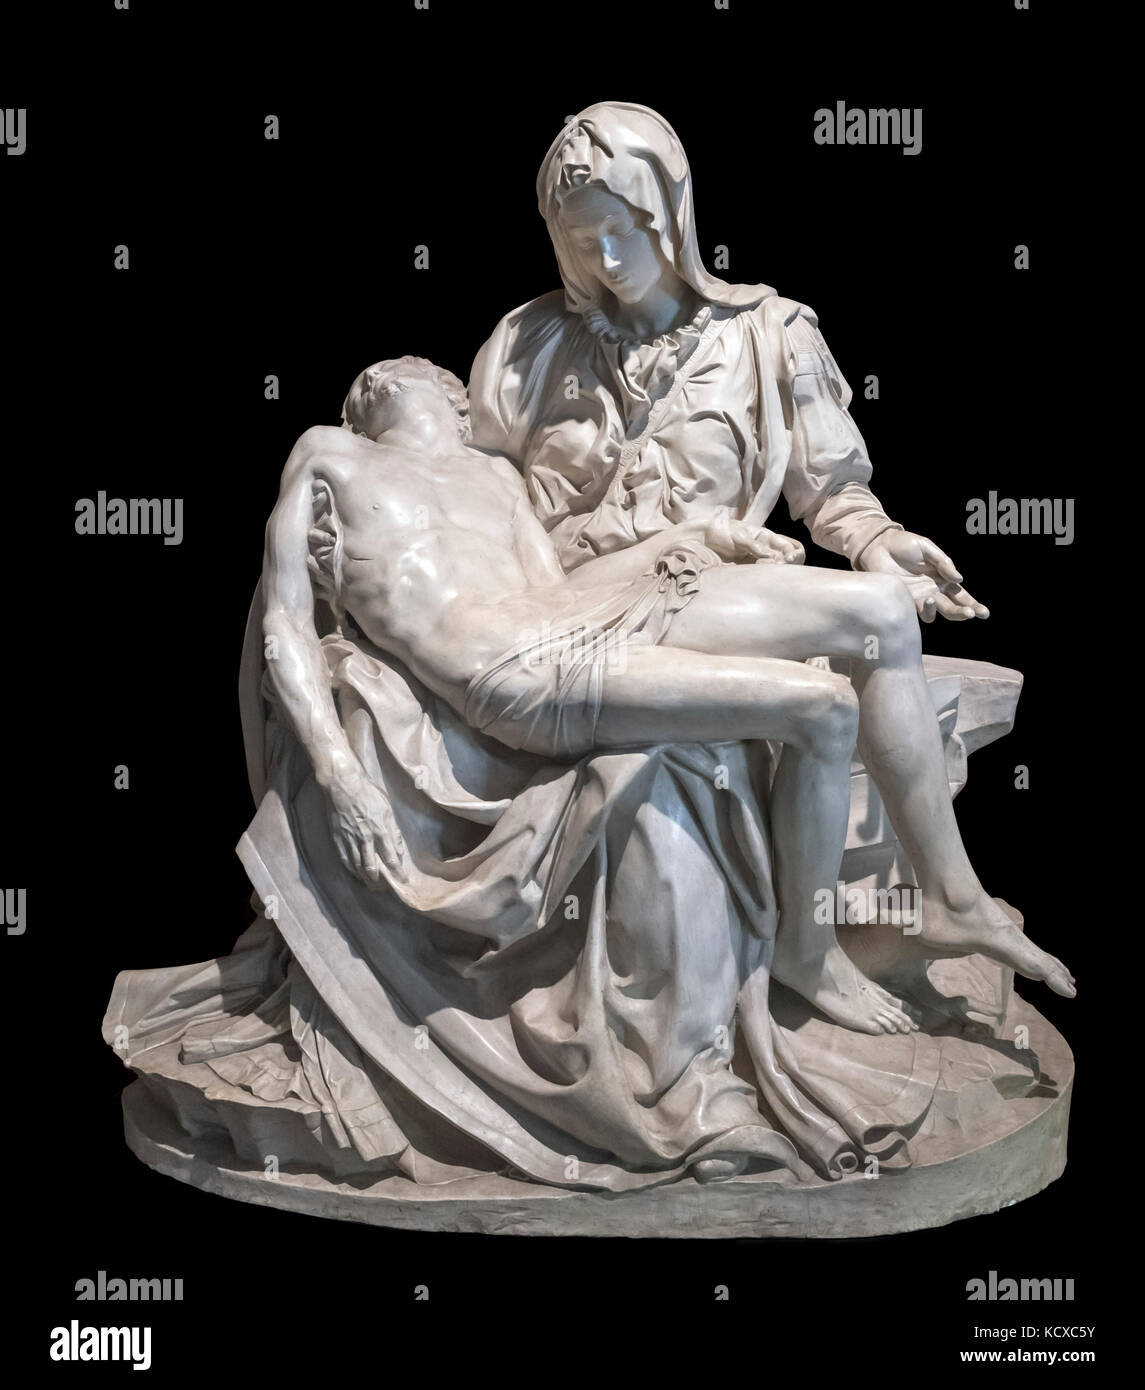 Gipsabguss der Pieta von Michelangelo, Vatikanische Museen, Vatikan, Rom, Italien. Stockfoto